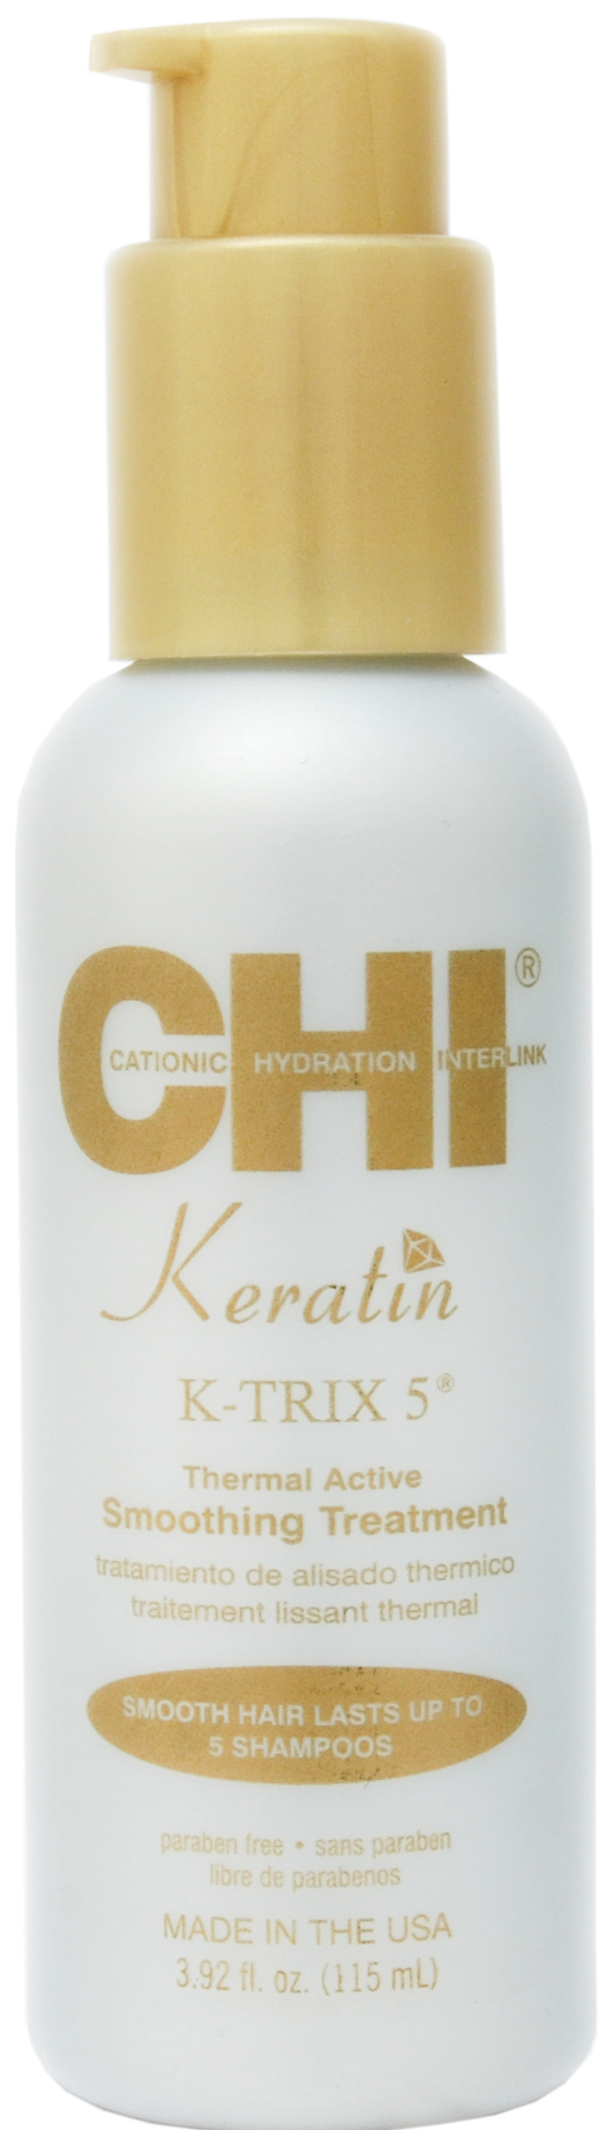 Эмульсия для волос CHI Keratin K-TRIX 5 Thermal Active Smoothing разглаживающая, 115 мл